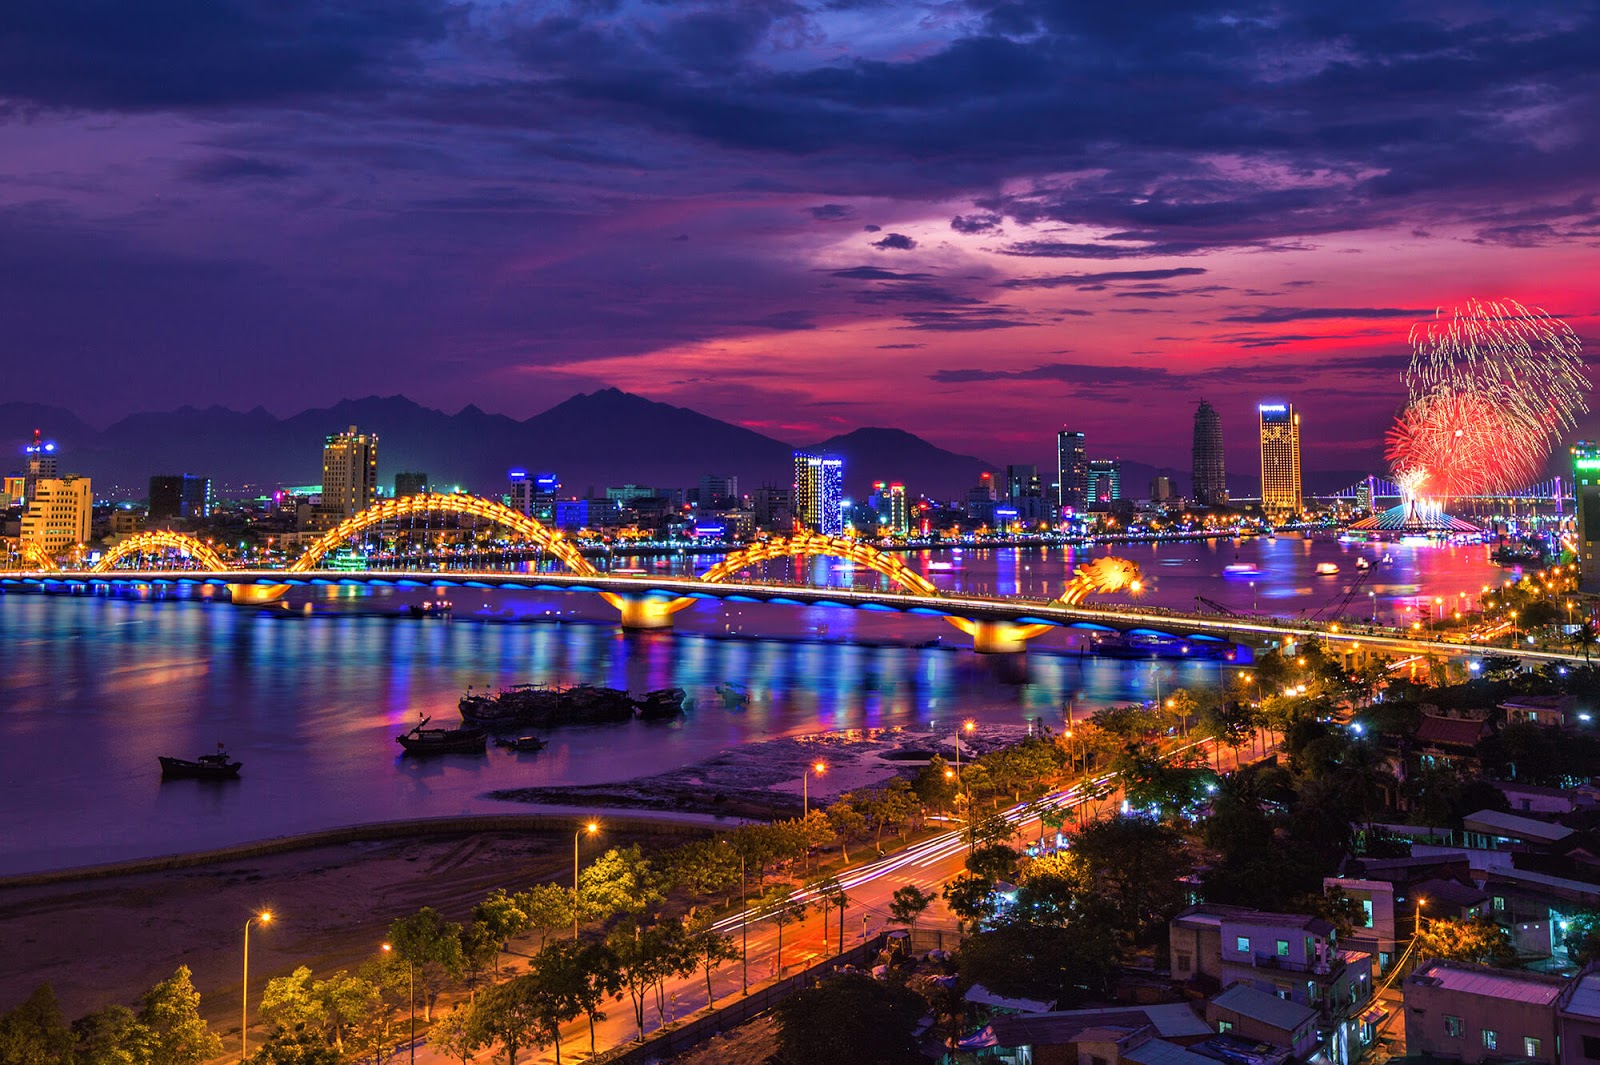 Kinh nghiệm để có có một chuyến du lịch trọn vẹn nhất đến Đà Nẵng ...